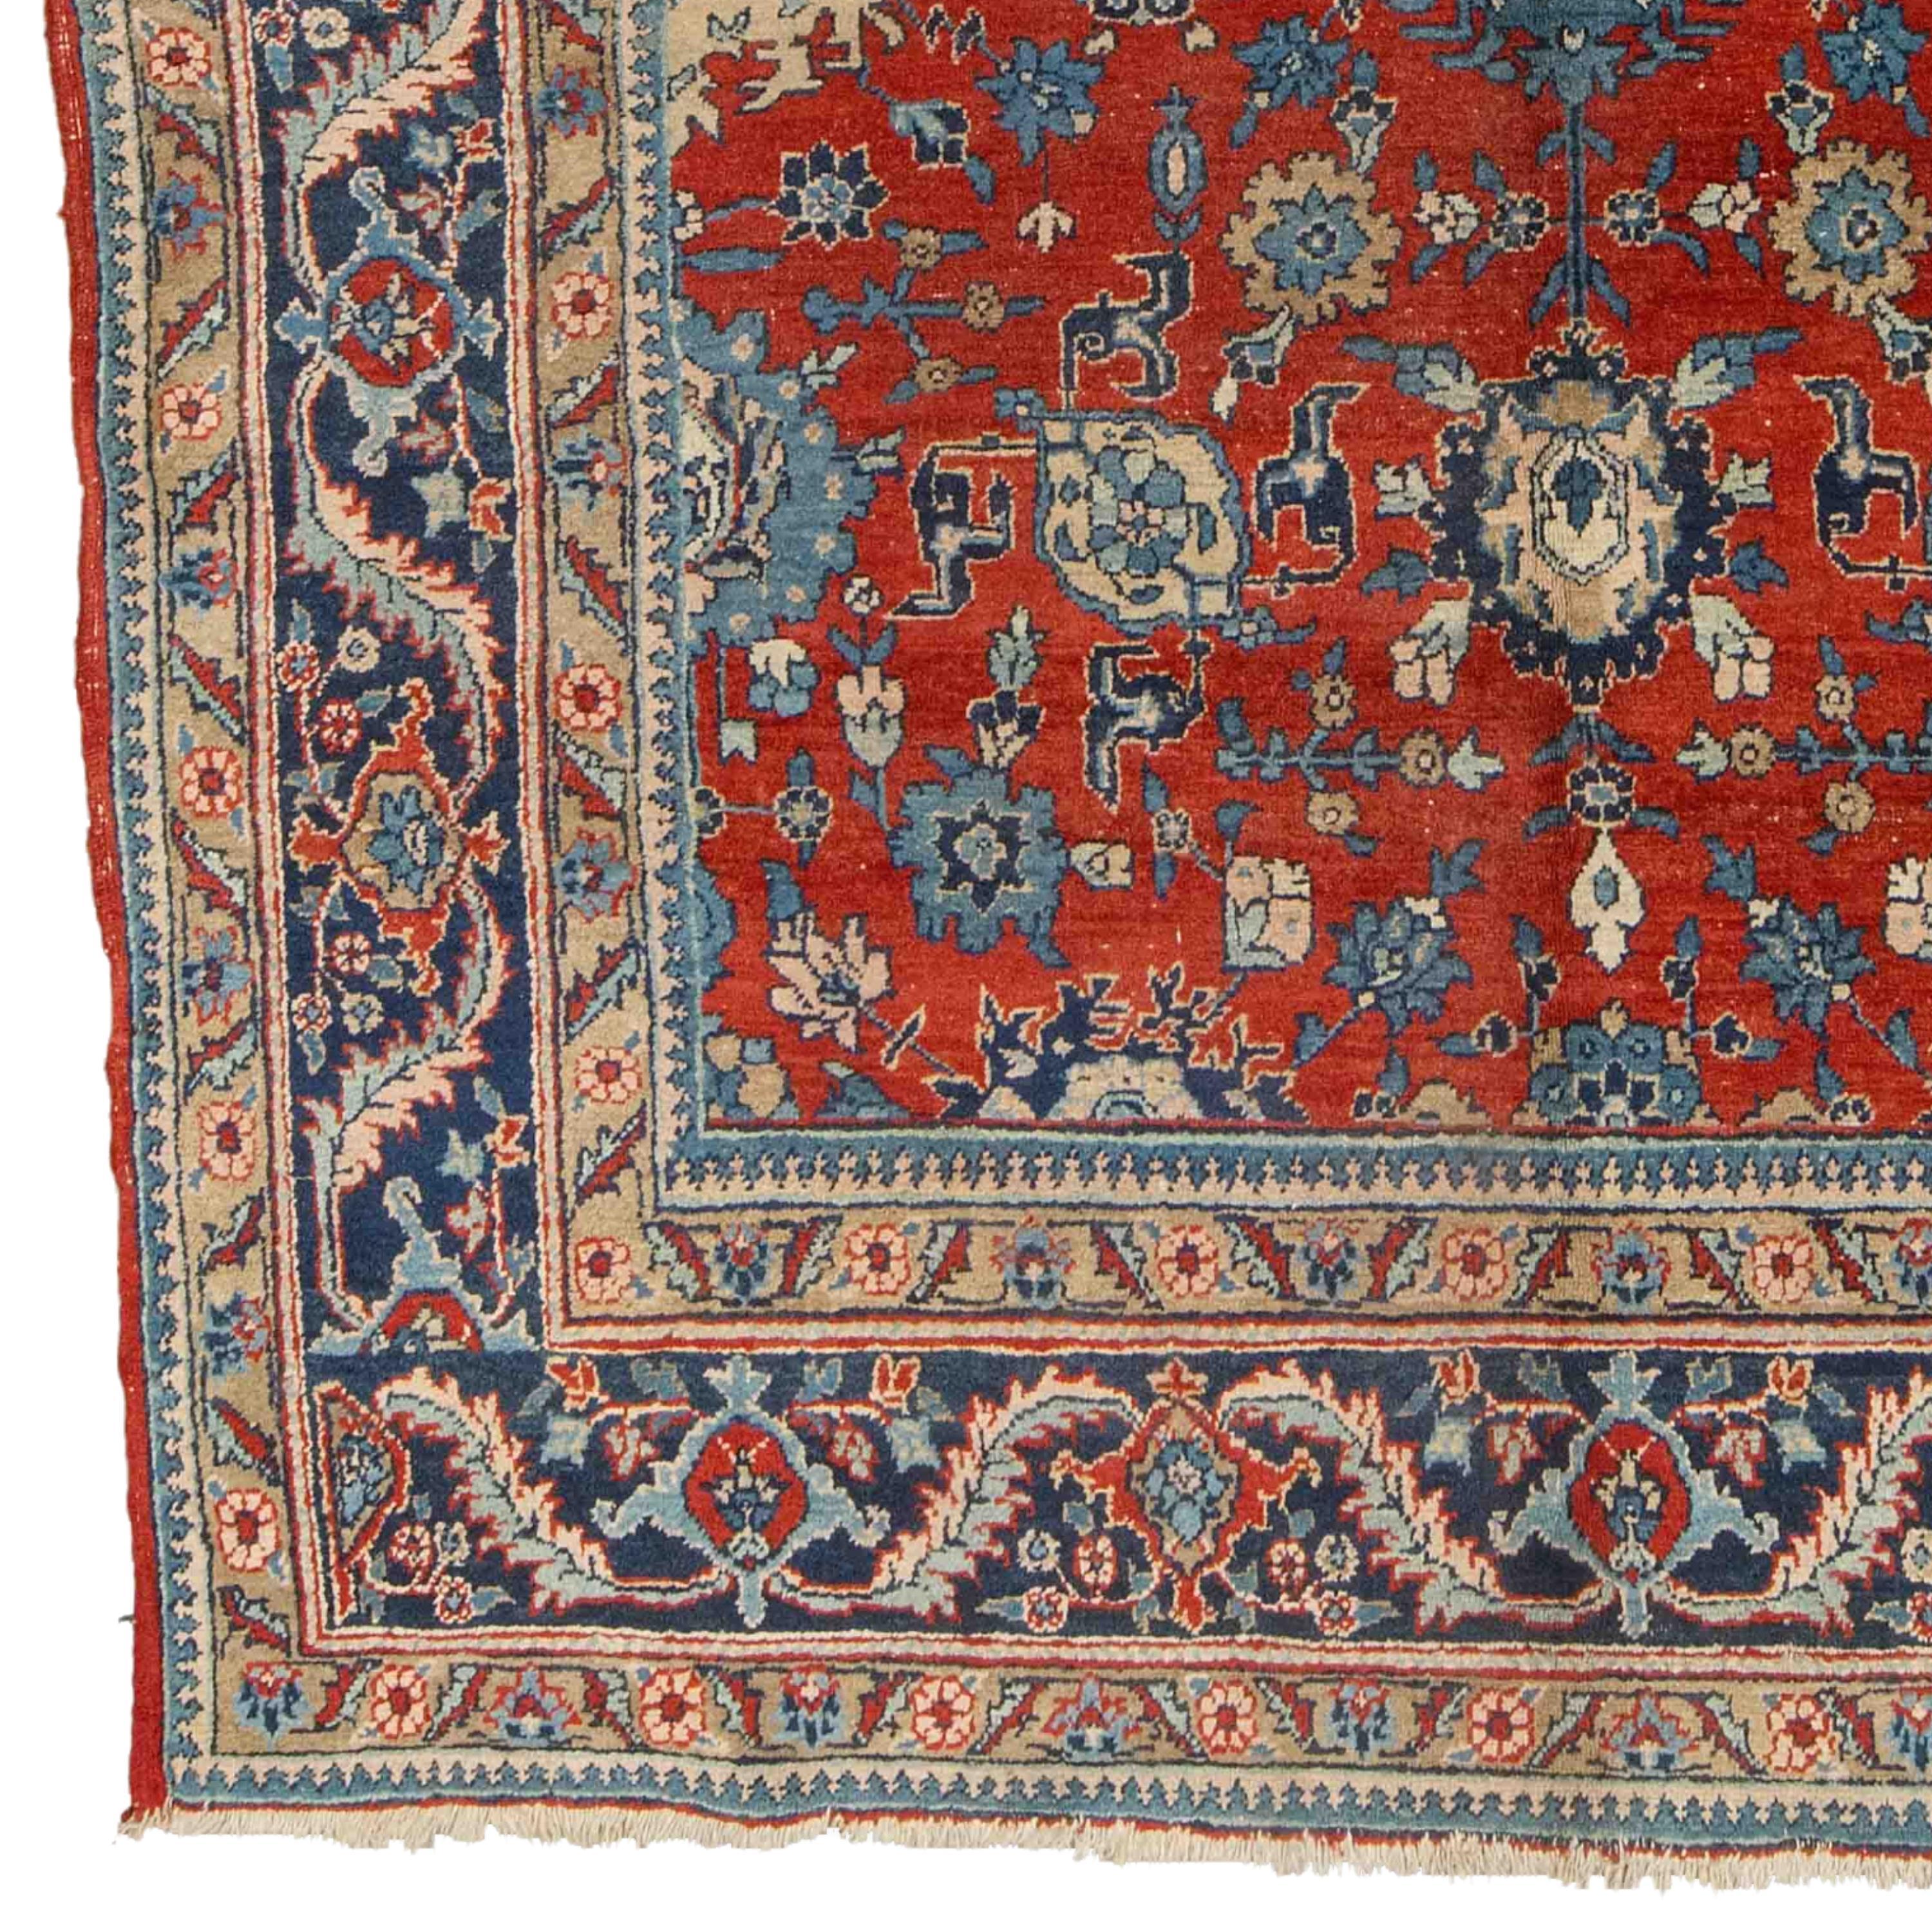 Tapis ancien de Tabriz 225 x 325cm (7,38 x 10,66 ft) Tapis de Tabriz de la fin du 19ème siècle

À partir du milieu du XIXe siècle, la production commerciale de tapis a repris en Azerbaïdjan, et Tabriz est devenu l'un des centres les plus importants